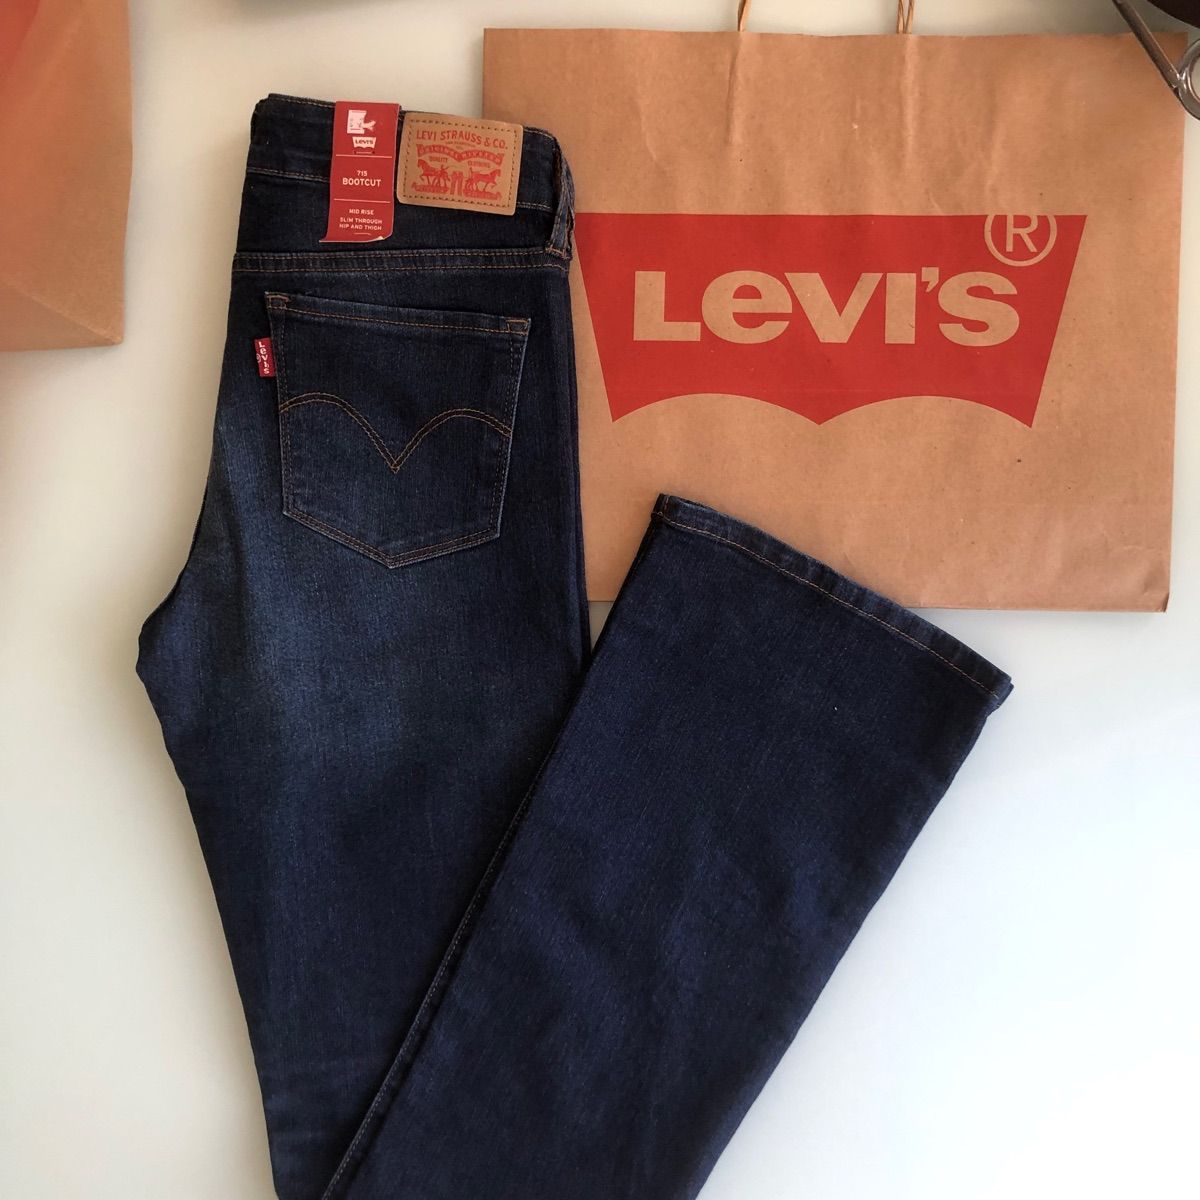 Calça Jeans Feminina da Levis Original 414 Classic Straight Plus Size  Importado., Calça Feminina Levi'S Nunca Usado 97085525